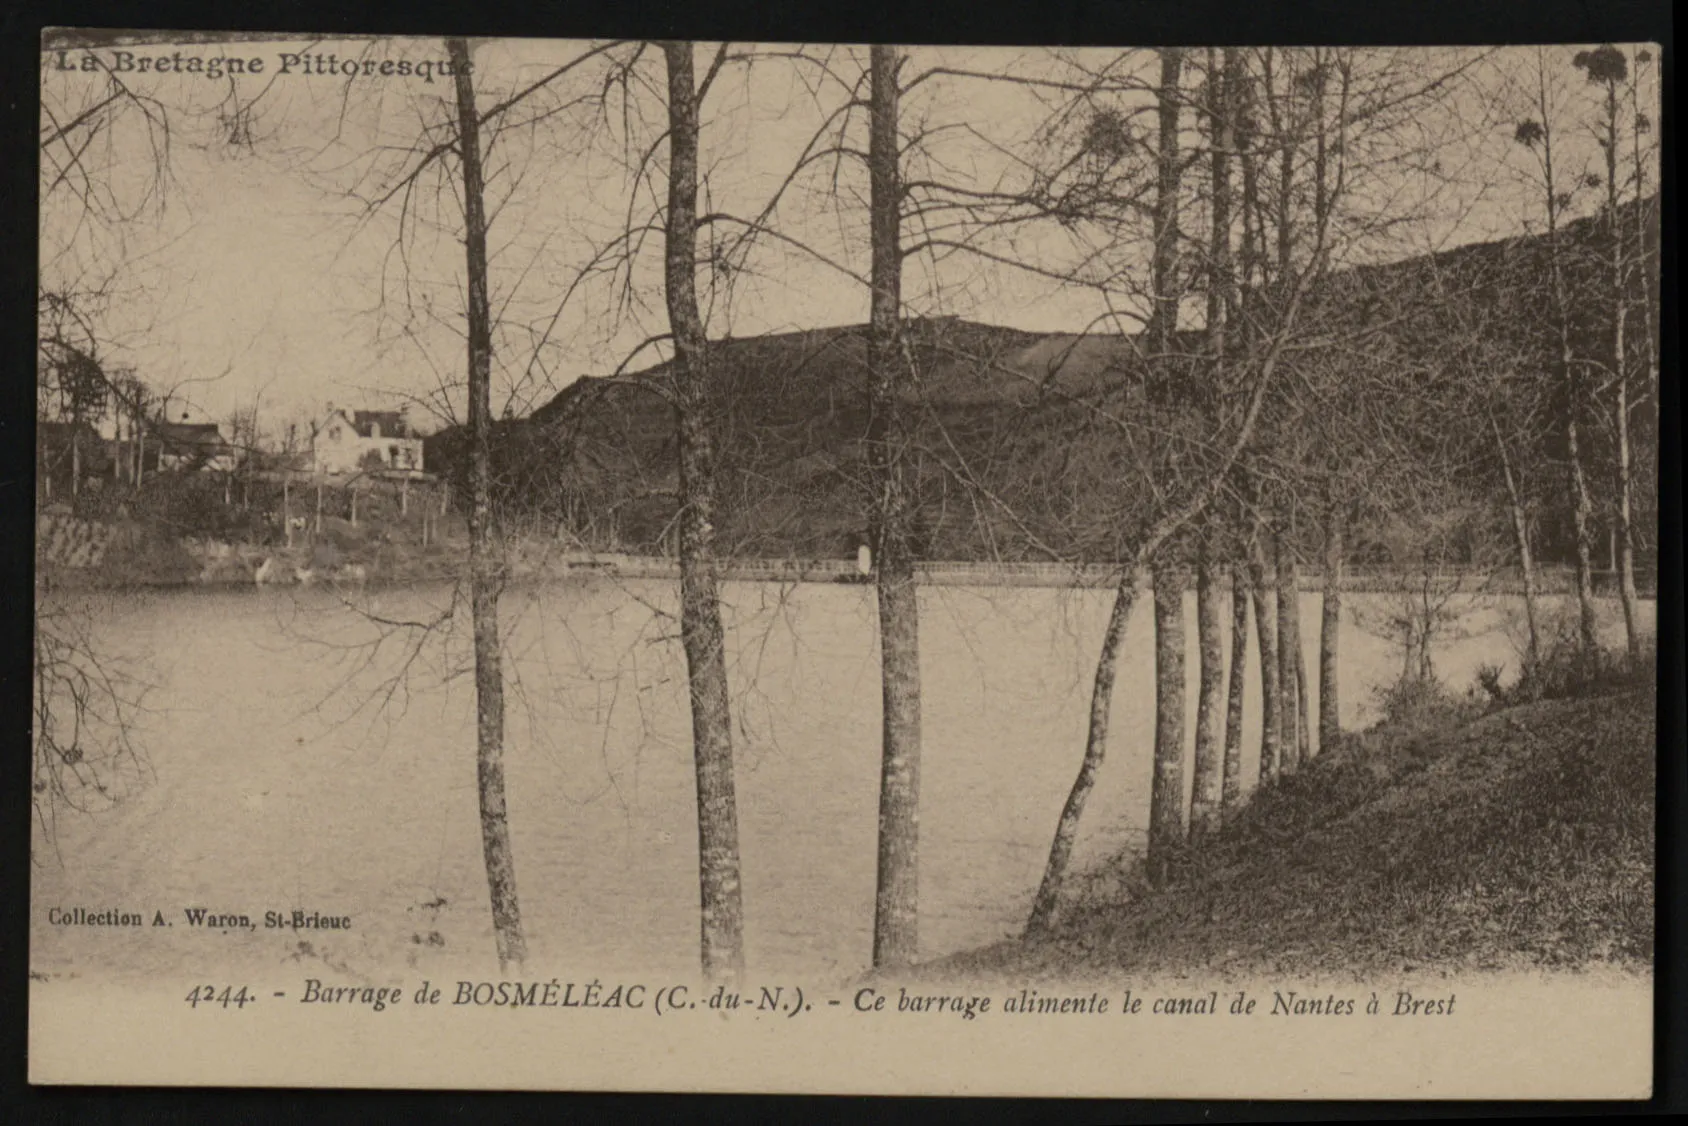 Photo showing: La Bretagne pittoresque. Barrage de Bosméléac... Ce barrage alimente le canal de Nantes à Brest.